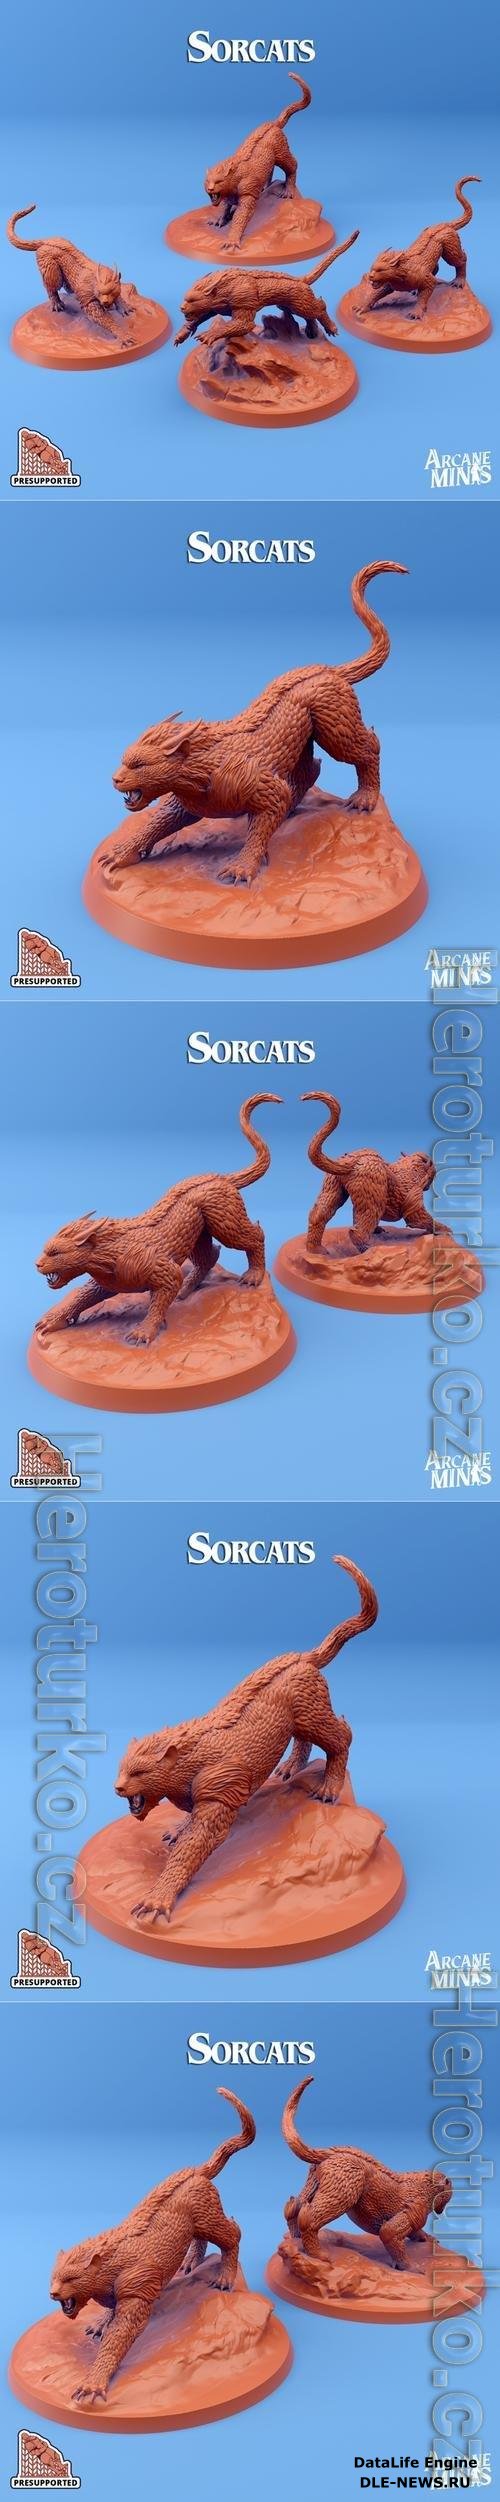 Arcane Minis - Sorcats 3D Print